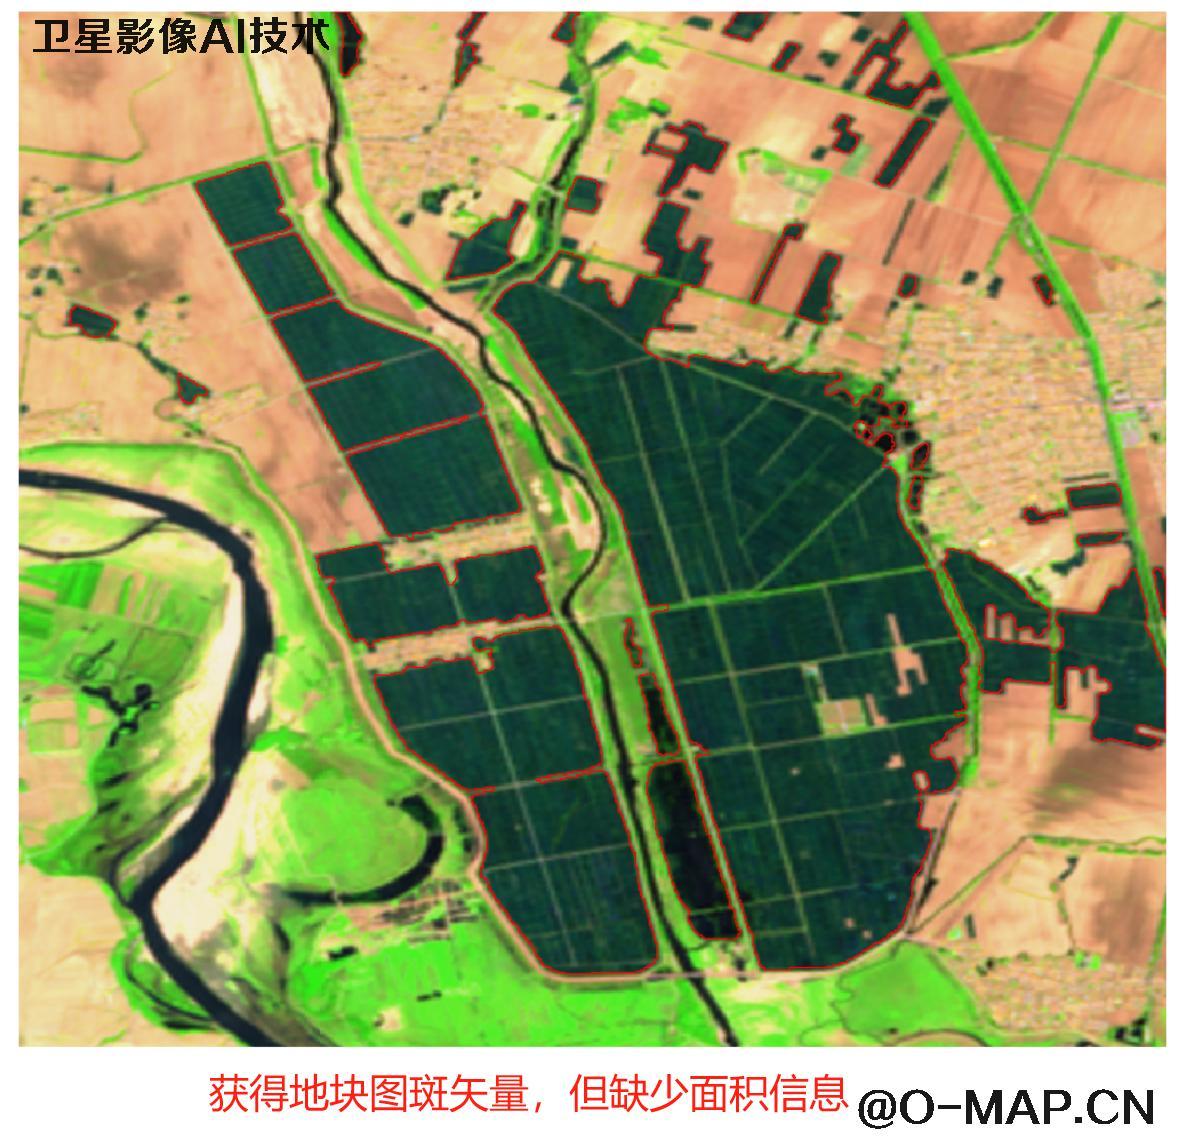 AI基于卫星影像提取水田地块分布图斑以及面积统计